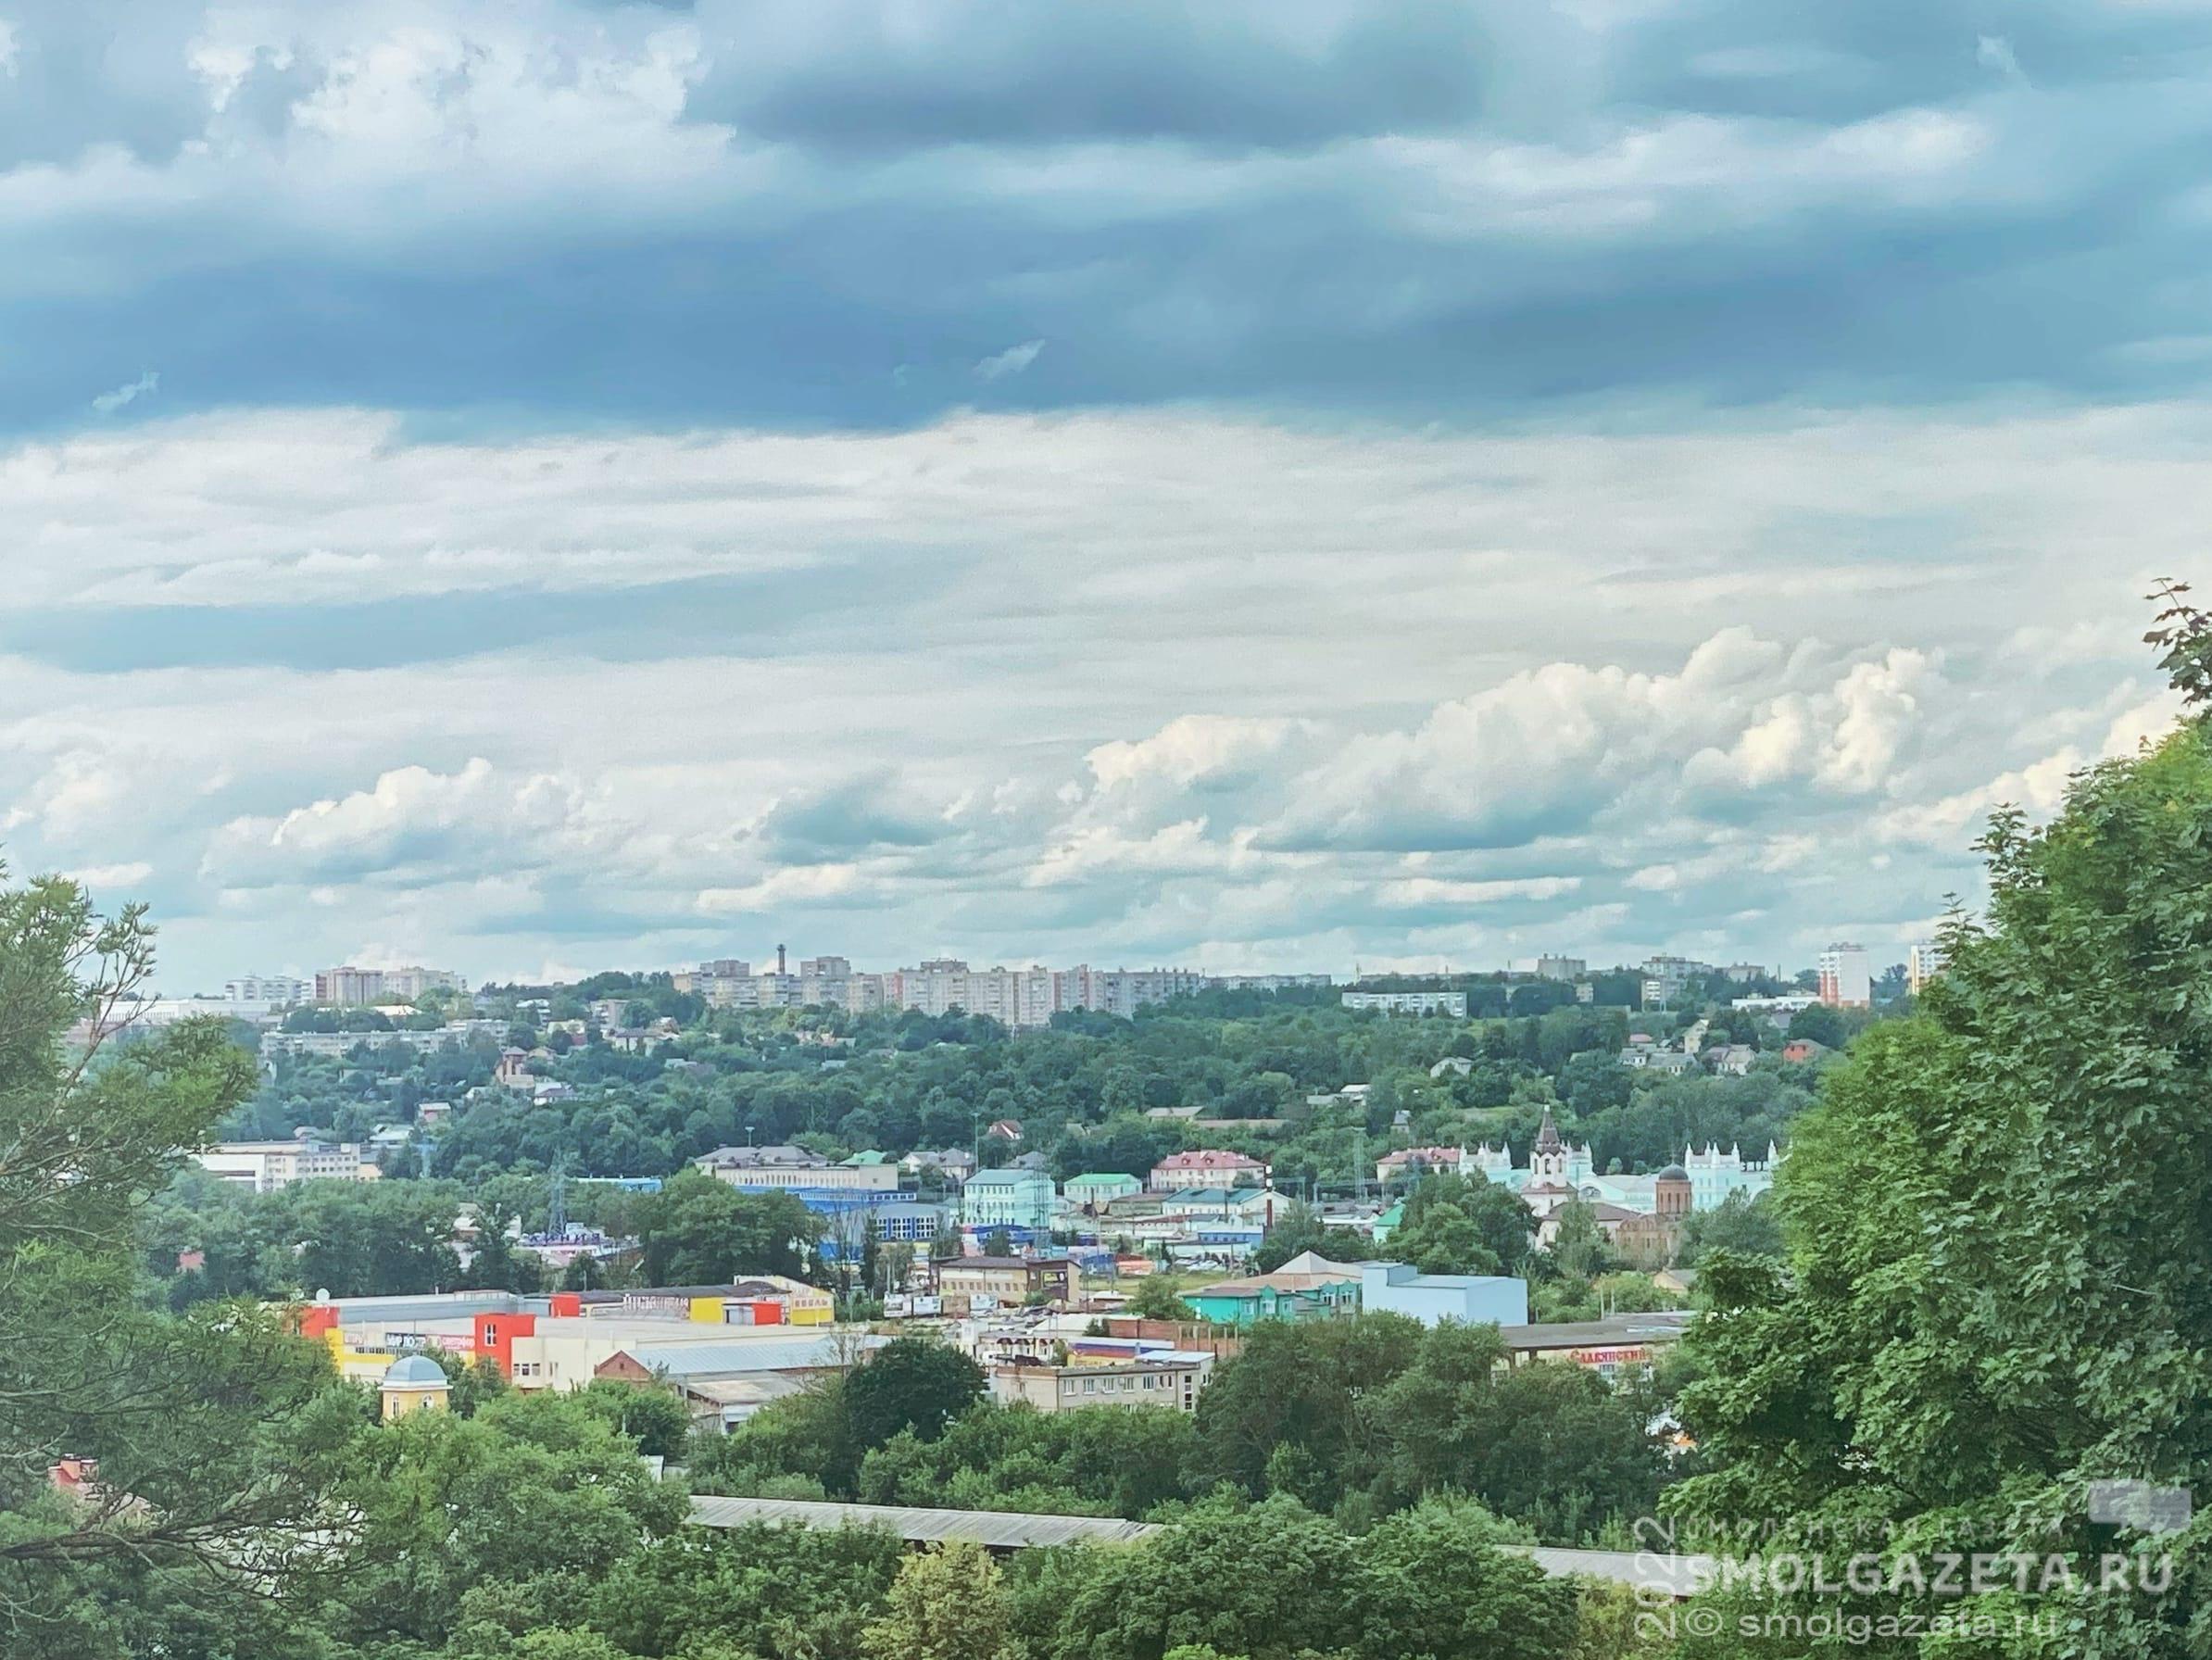 10 июля в Смоленске ожидаются кратковременные освежающие дожди и грозы